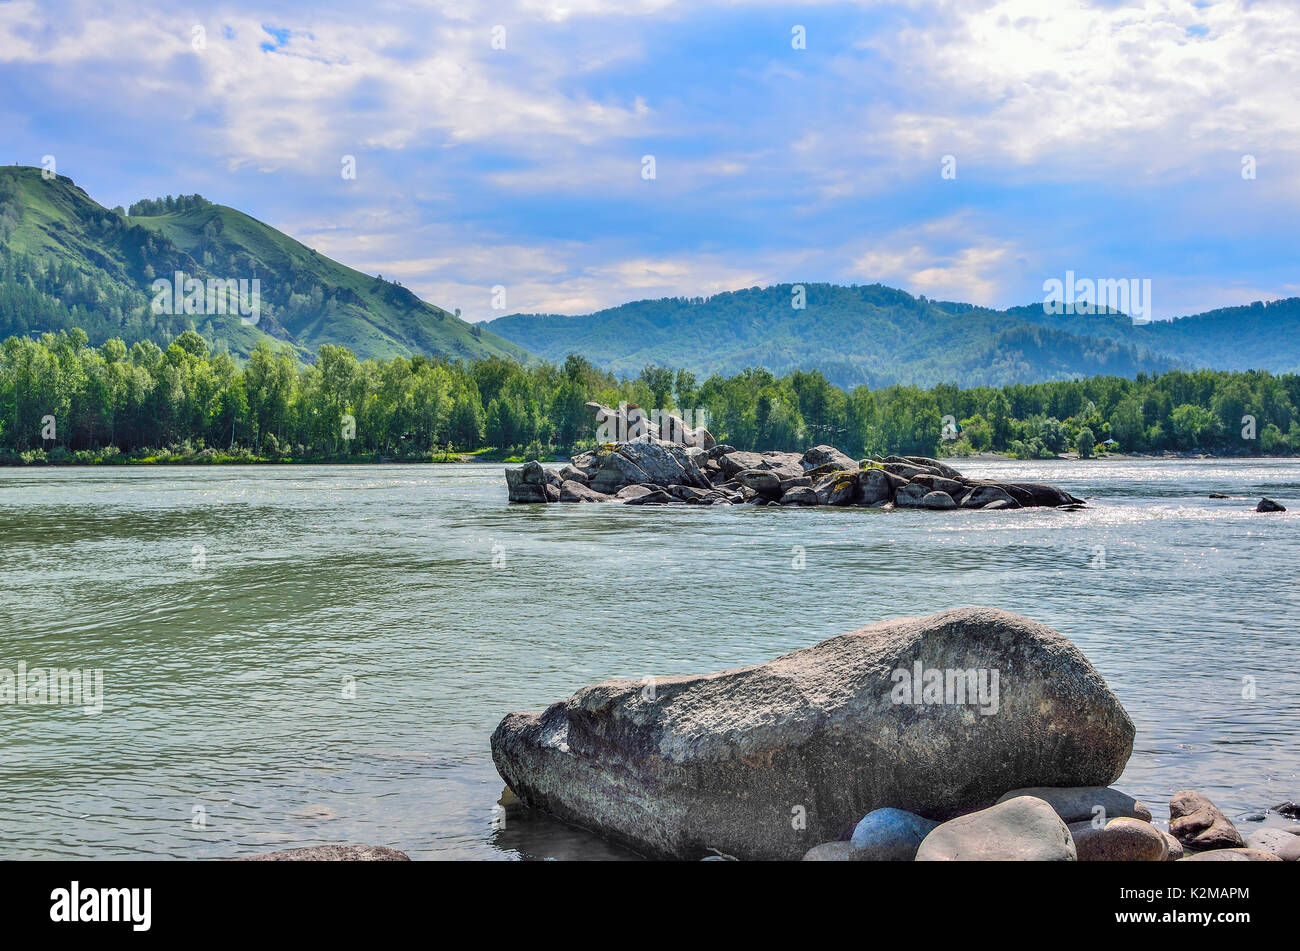 Belle rivière de montagne avec des rapides et des îles des énormes rochers entre les rives boisées - paysage d'été ensoleillée, montagnes de l'Altaï, en Russie Banque D'Images